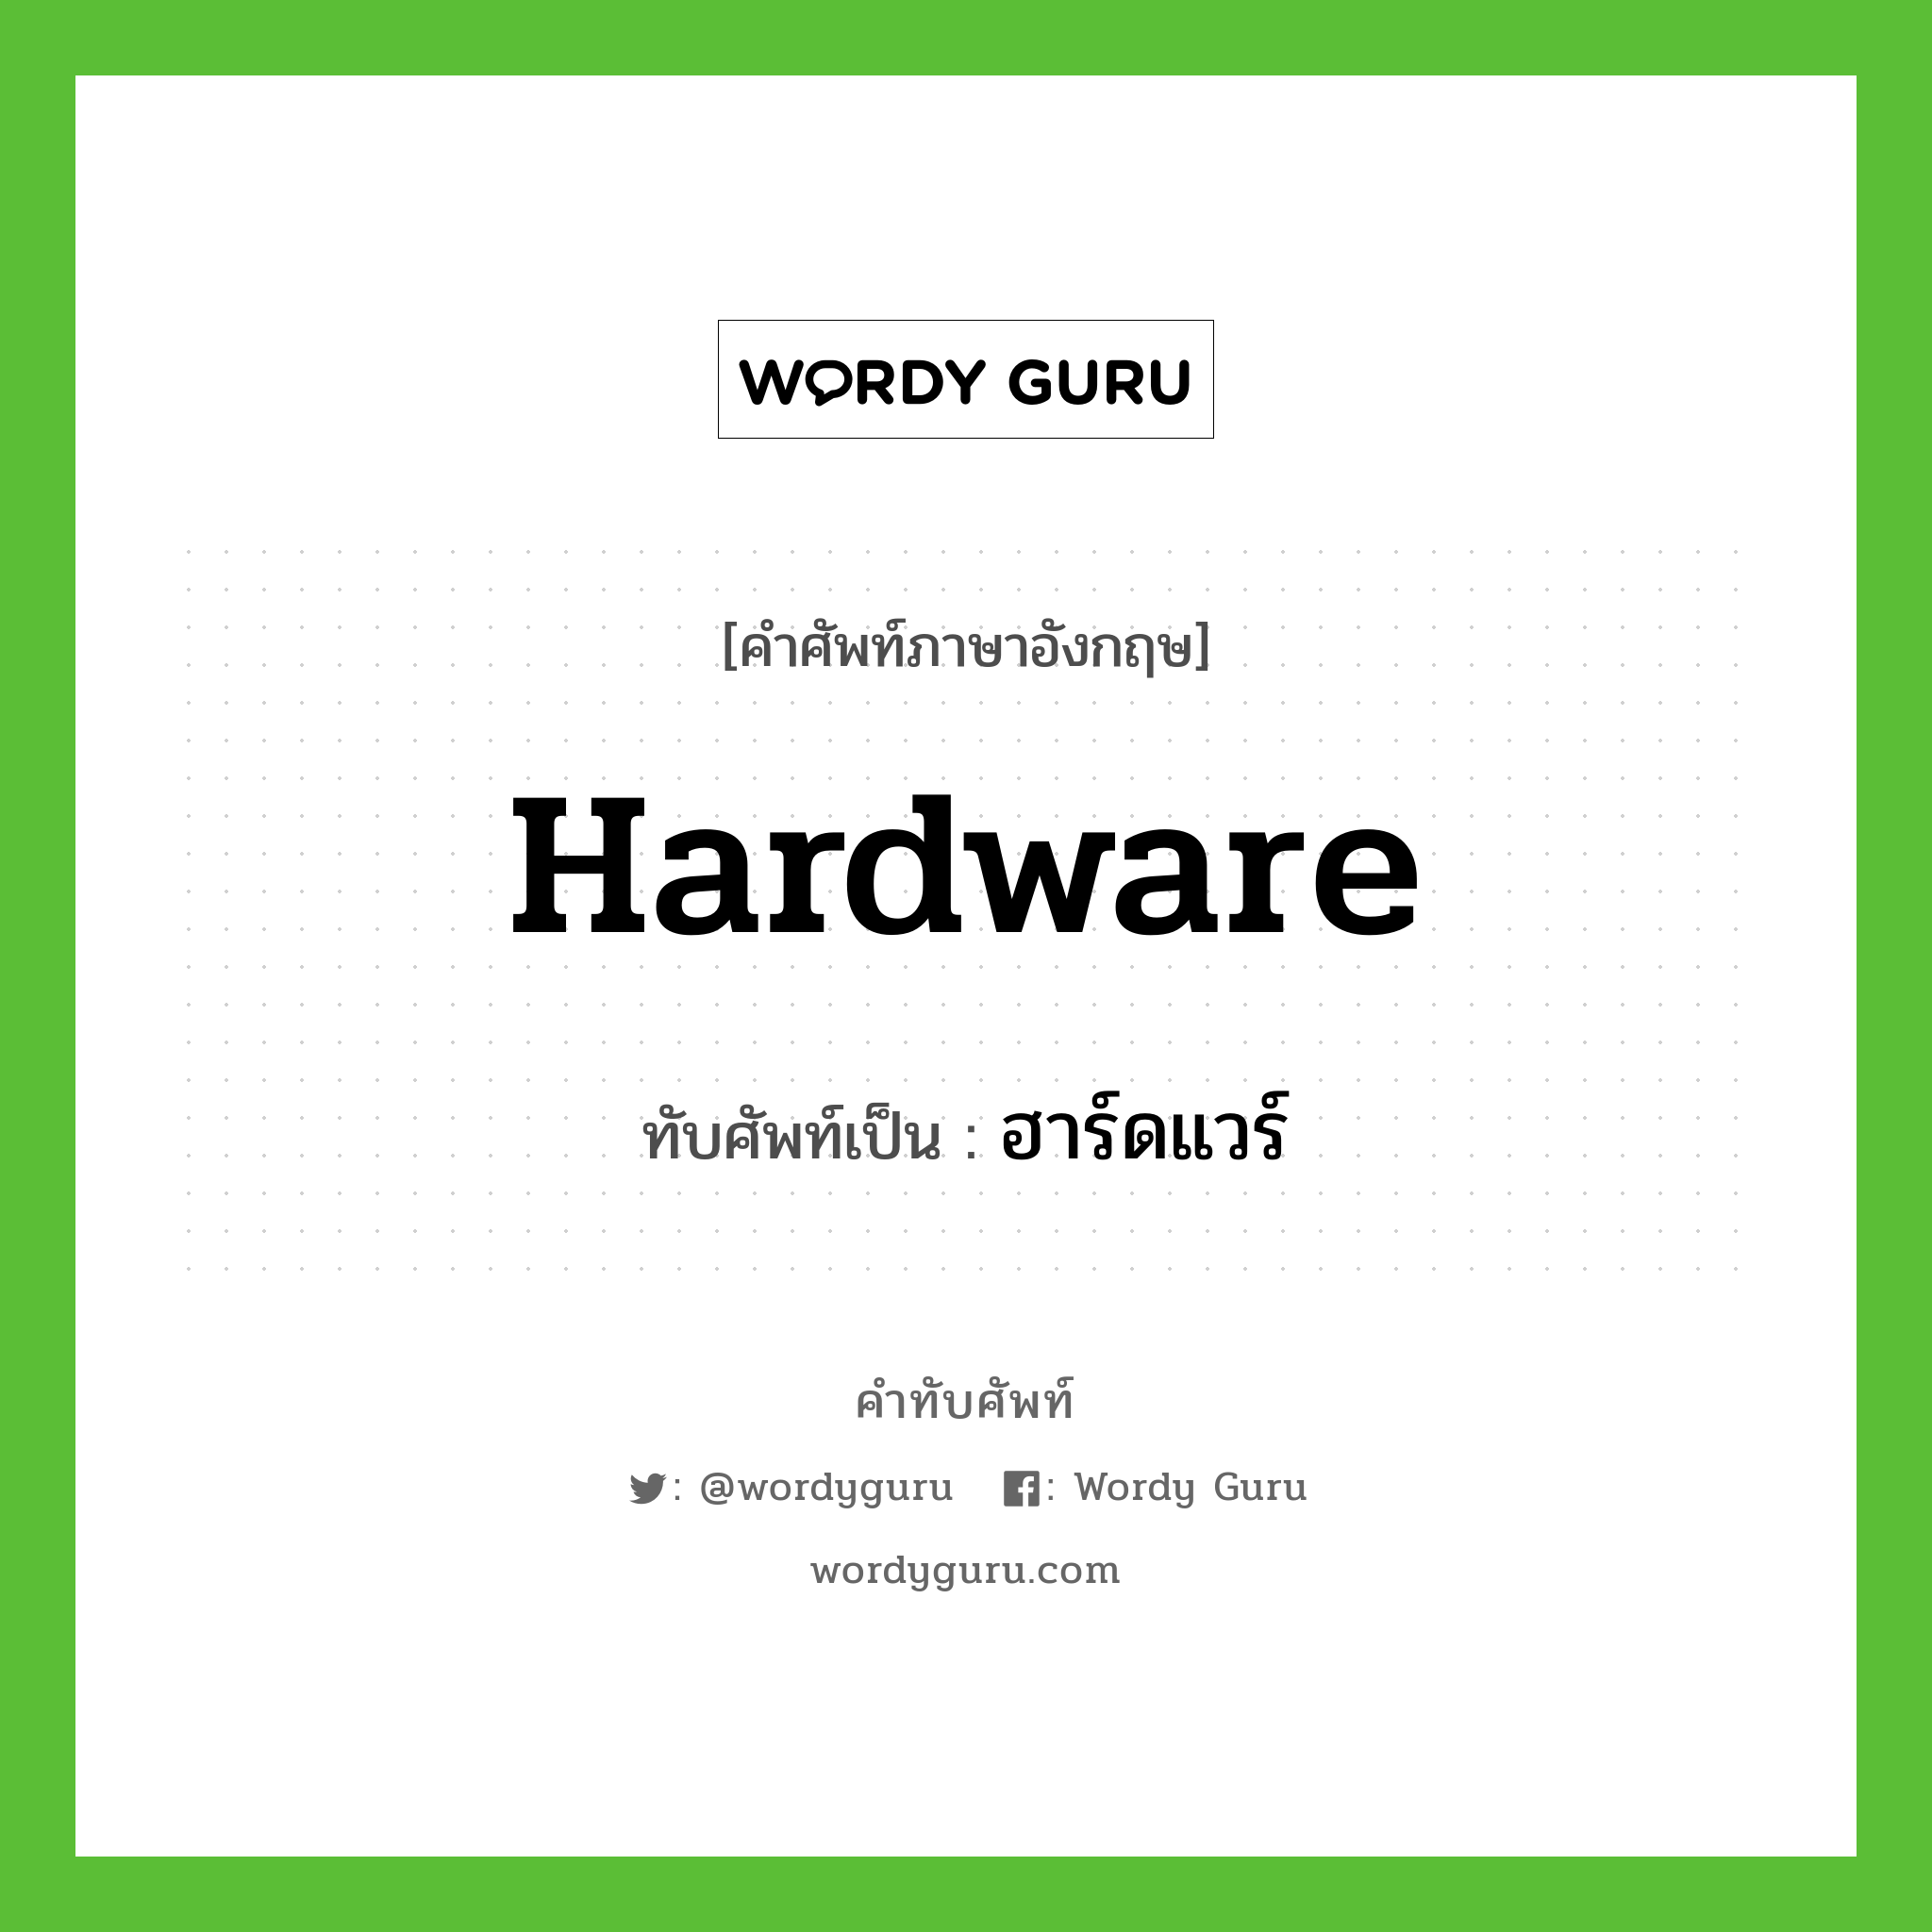 hardware เขียนเป็นคำไทยว่าอะไร?, คำศัพท์ภาษาอังกฤษ hardware ทับศัพท์เป็น ฮาร์ดแวร์